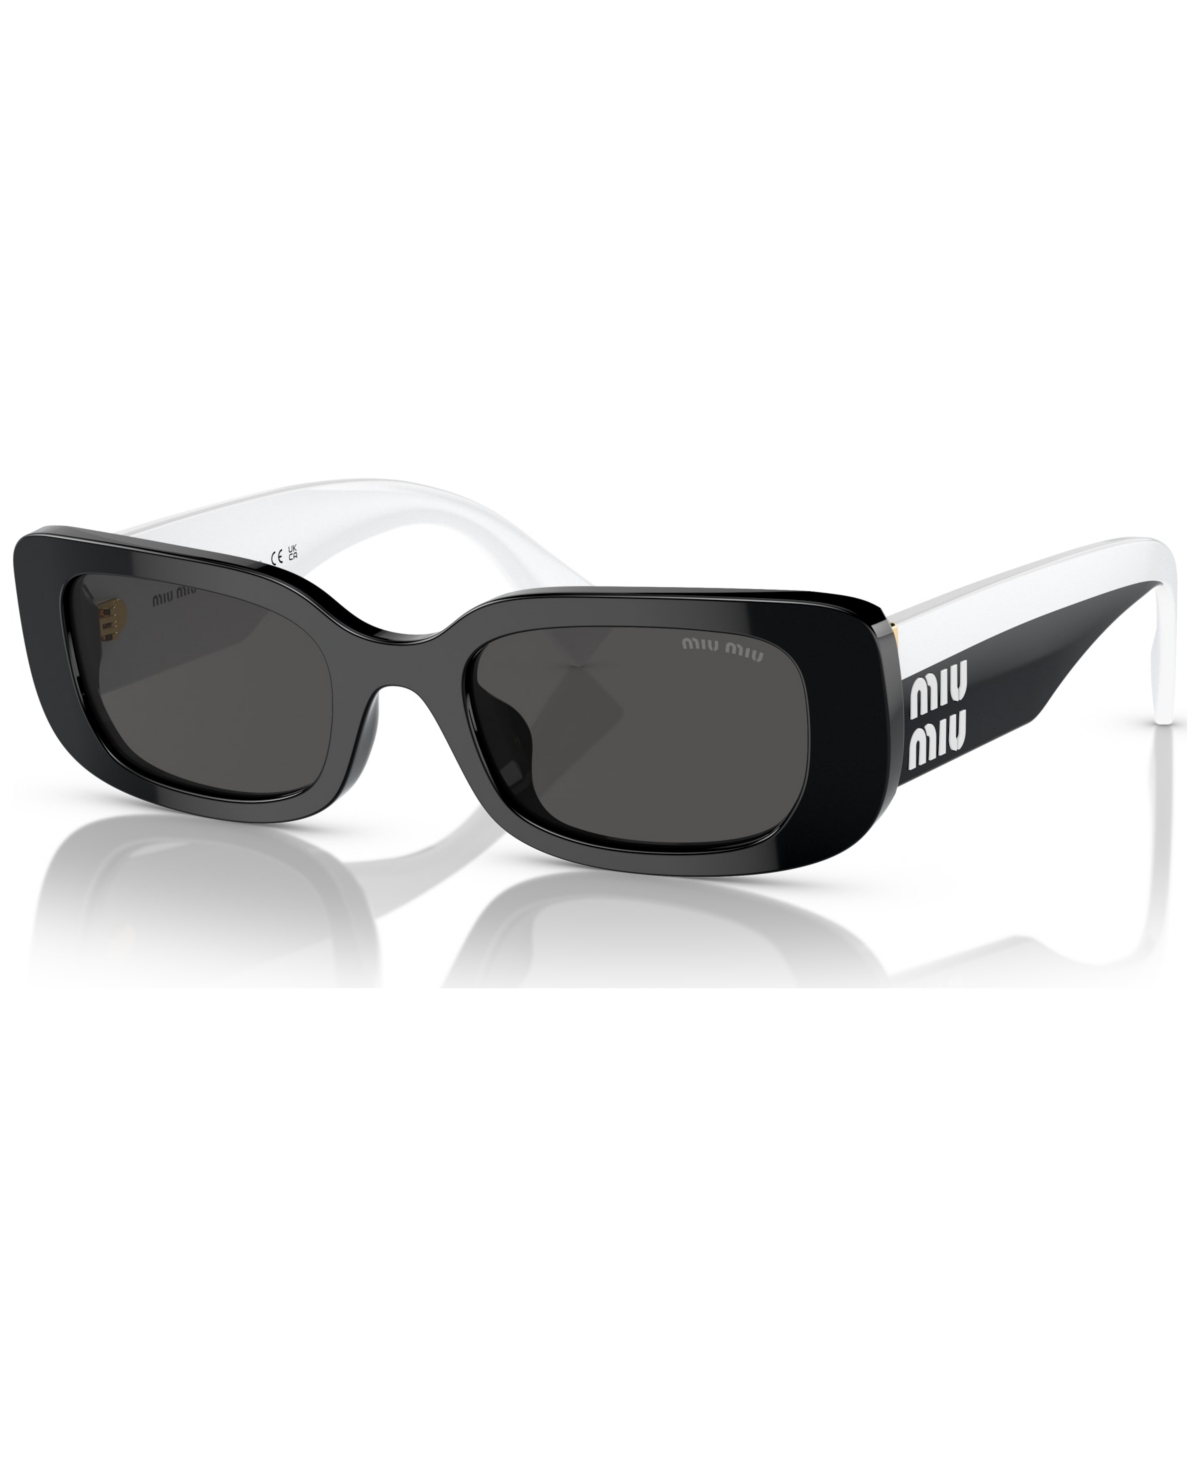 Miu Miu Women's Sunglasses, Mu 08ys51-x 51 In Black